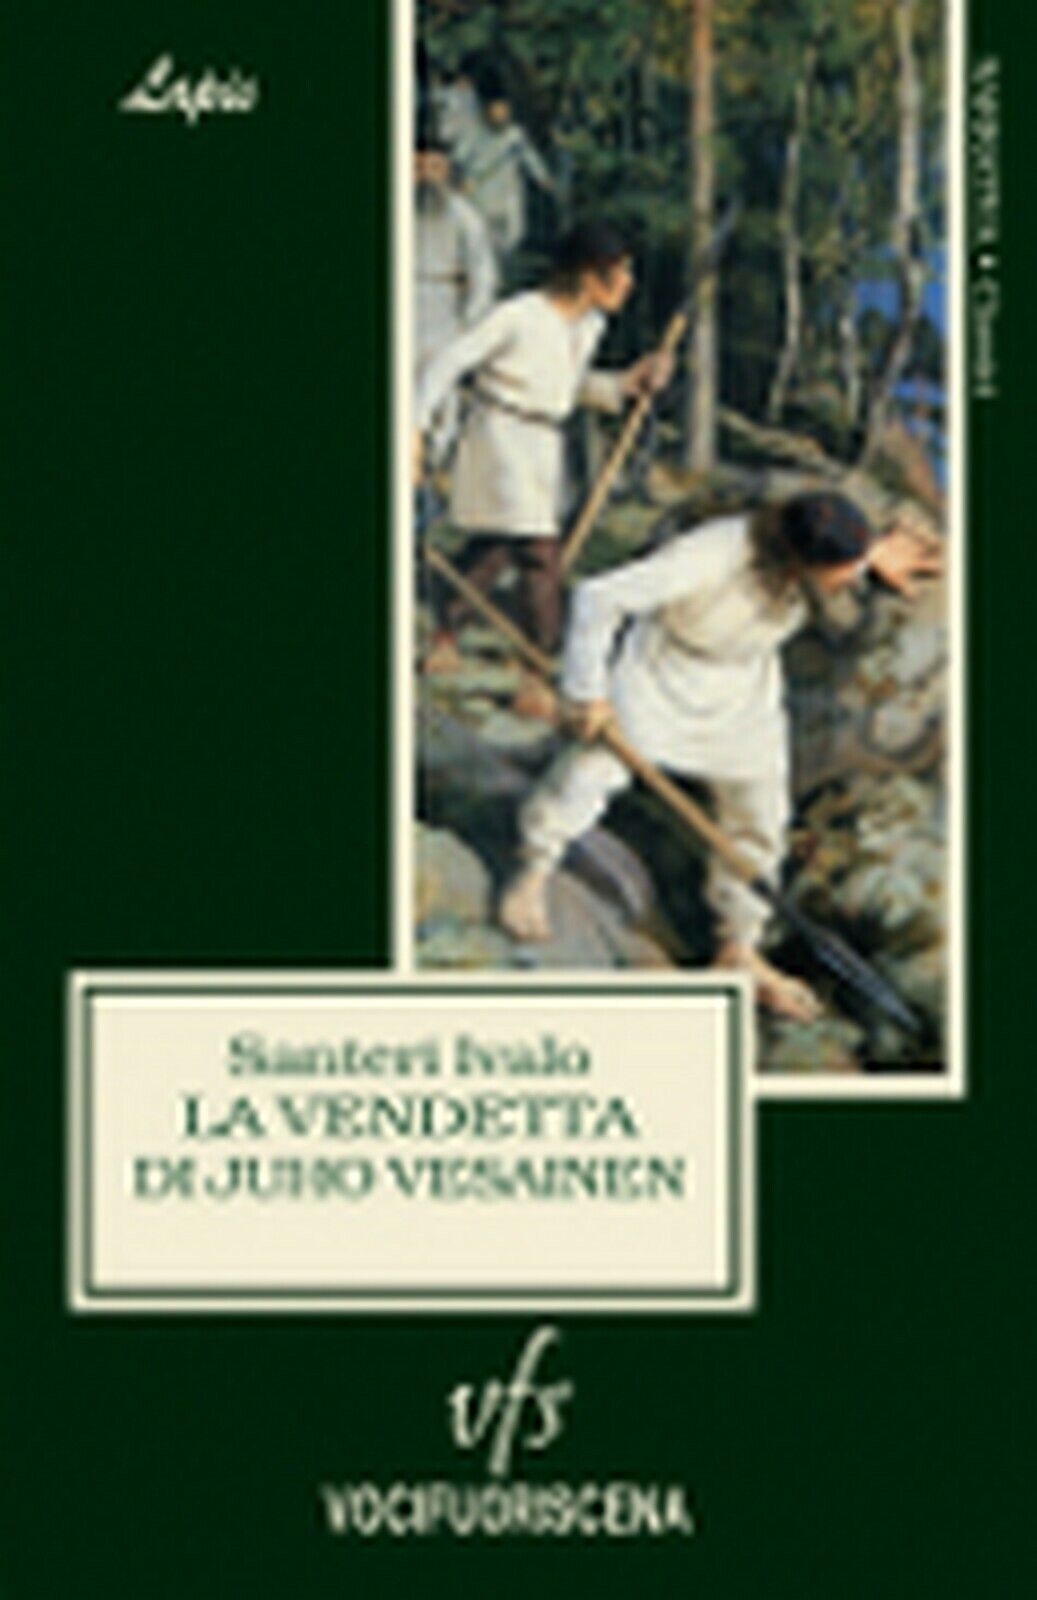 LA VENDETTA DI JUHO VESAINEN  di Santeri Ivalo,  2018,  Vocifuoriscena libro usato